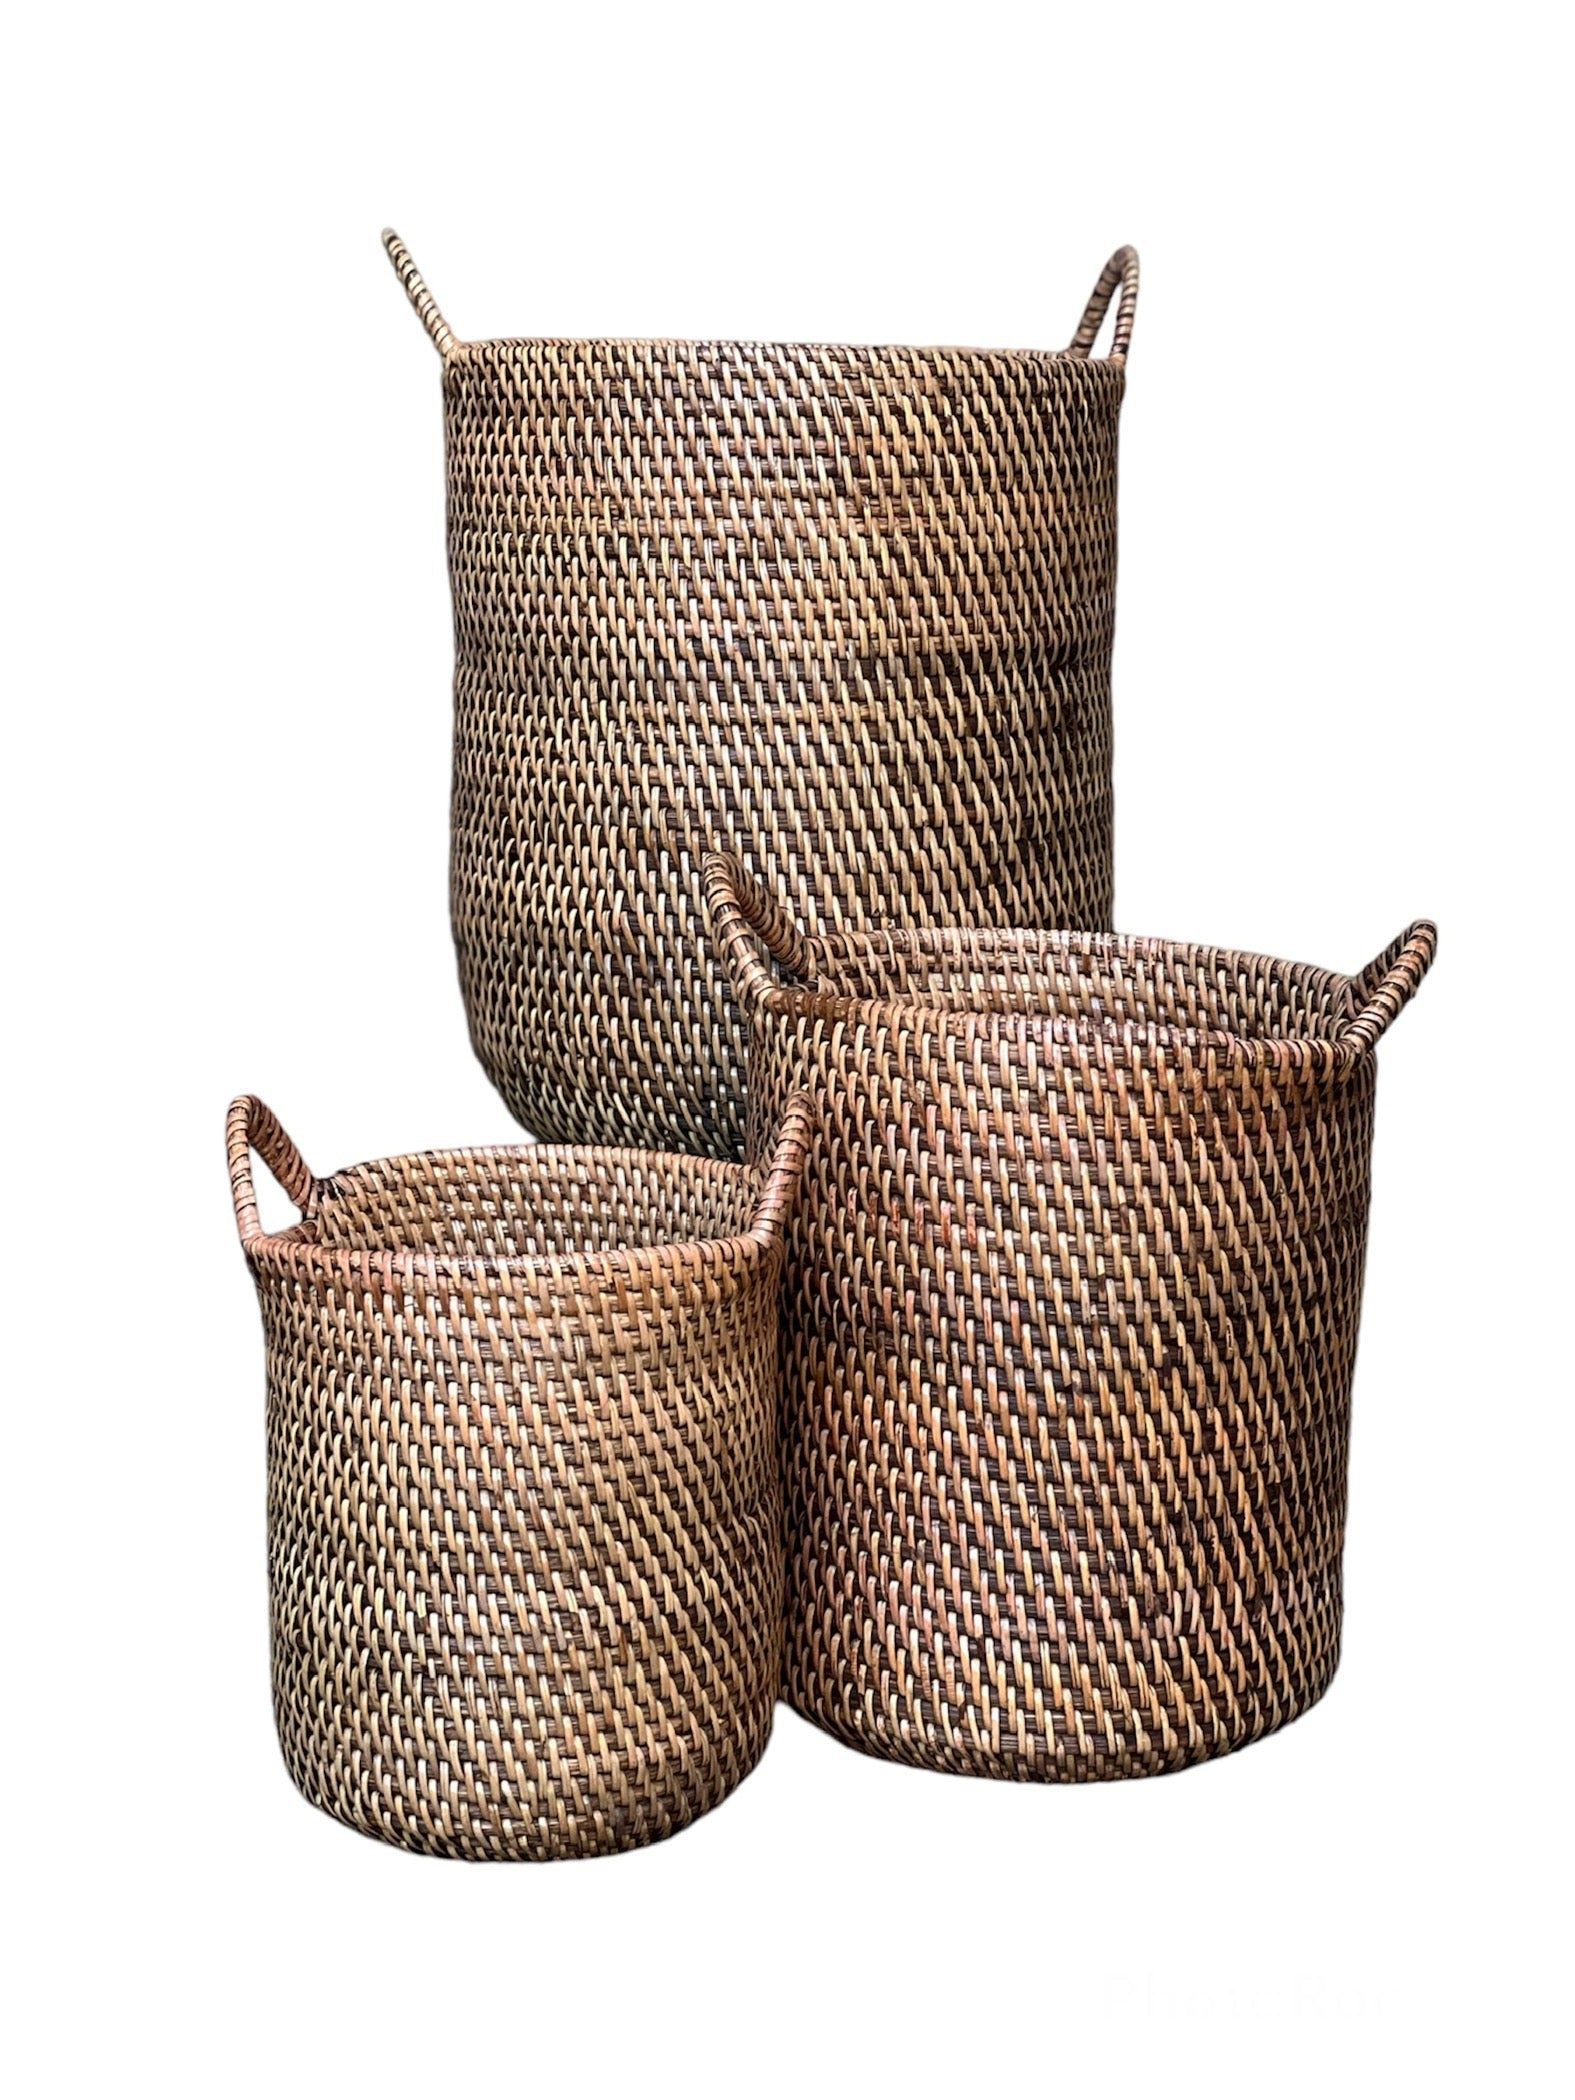 naturbrune bambuskurve, der er flettet med praktiske håndtag